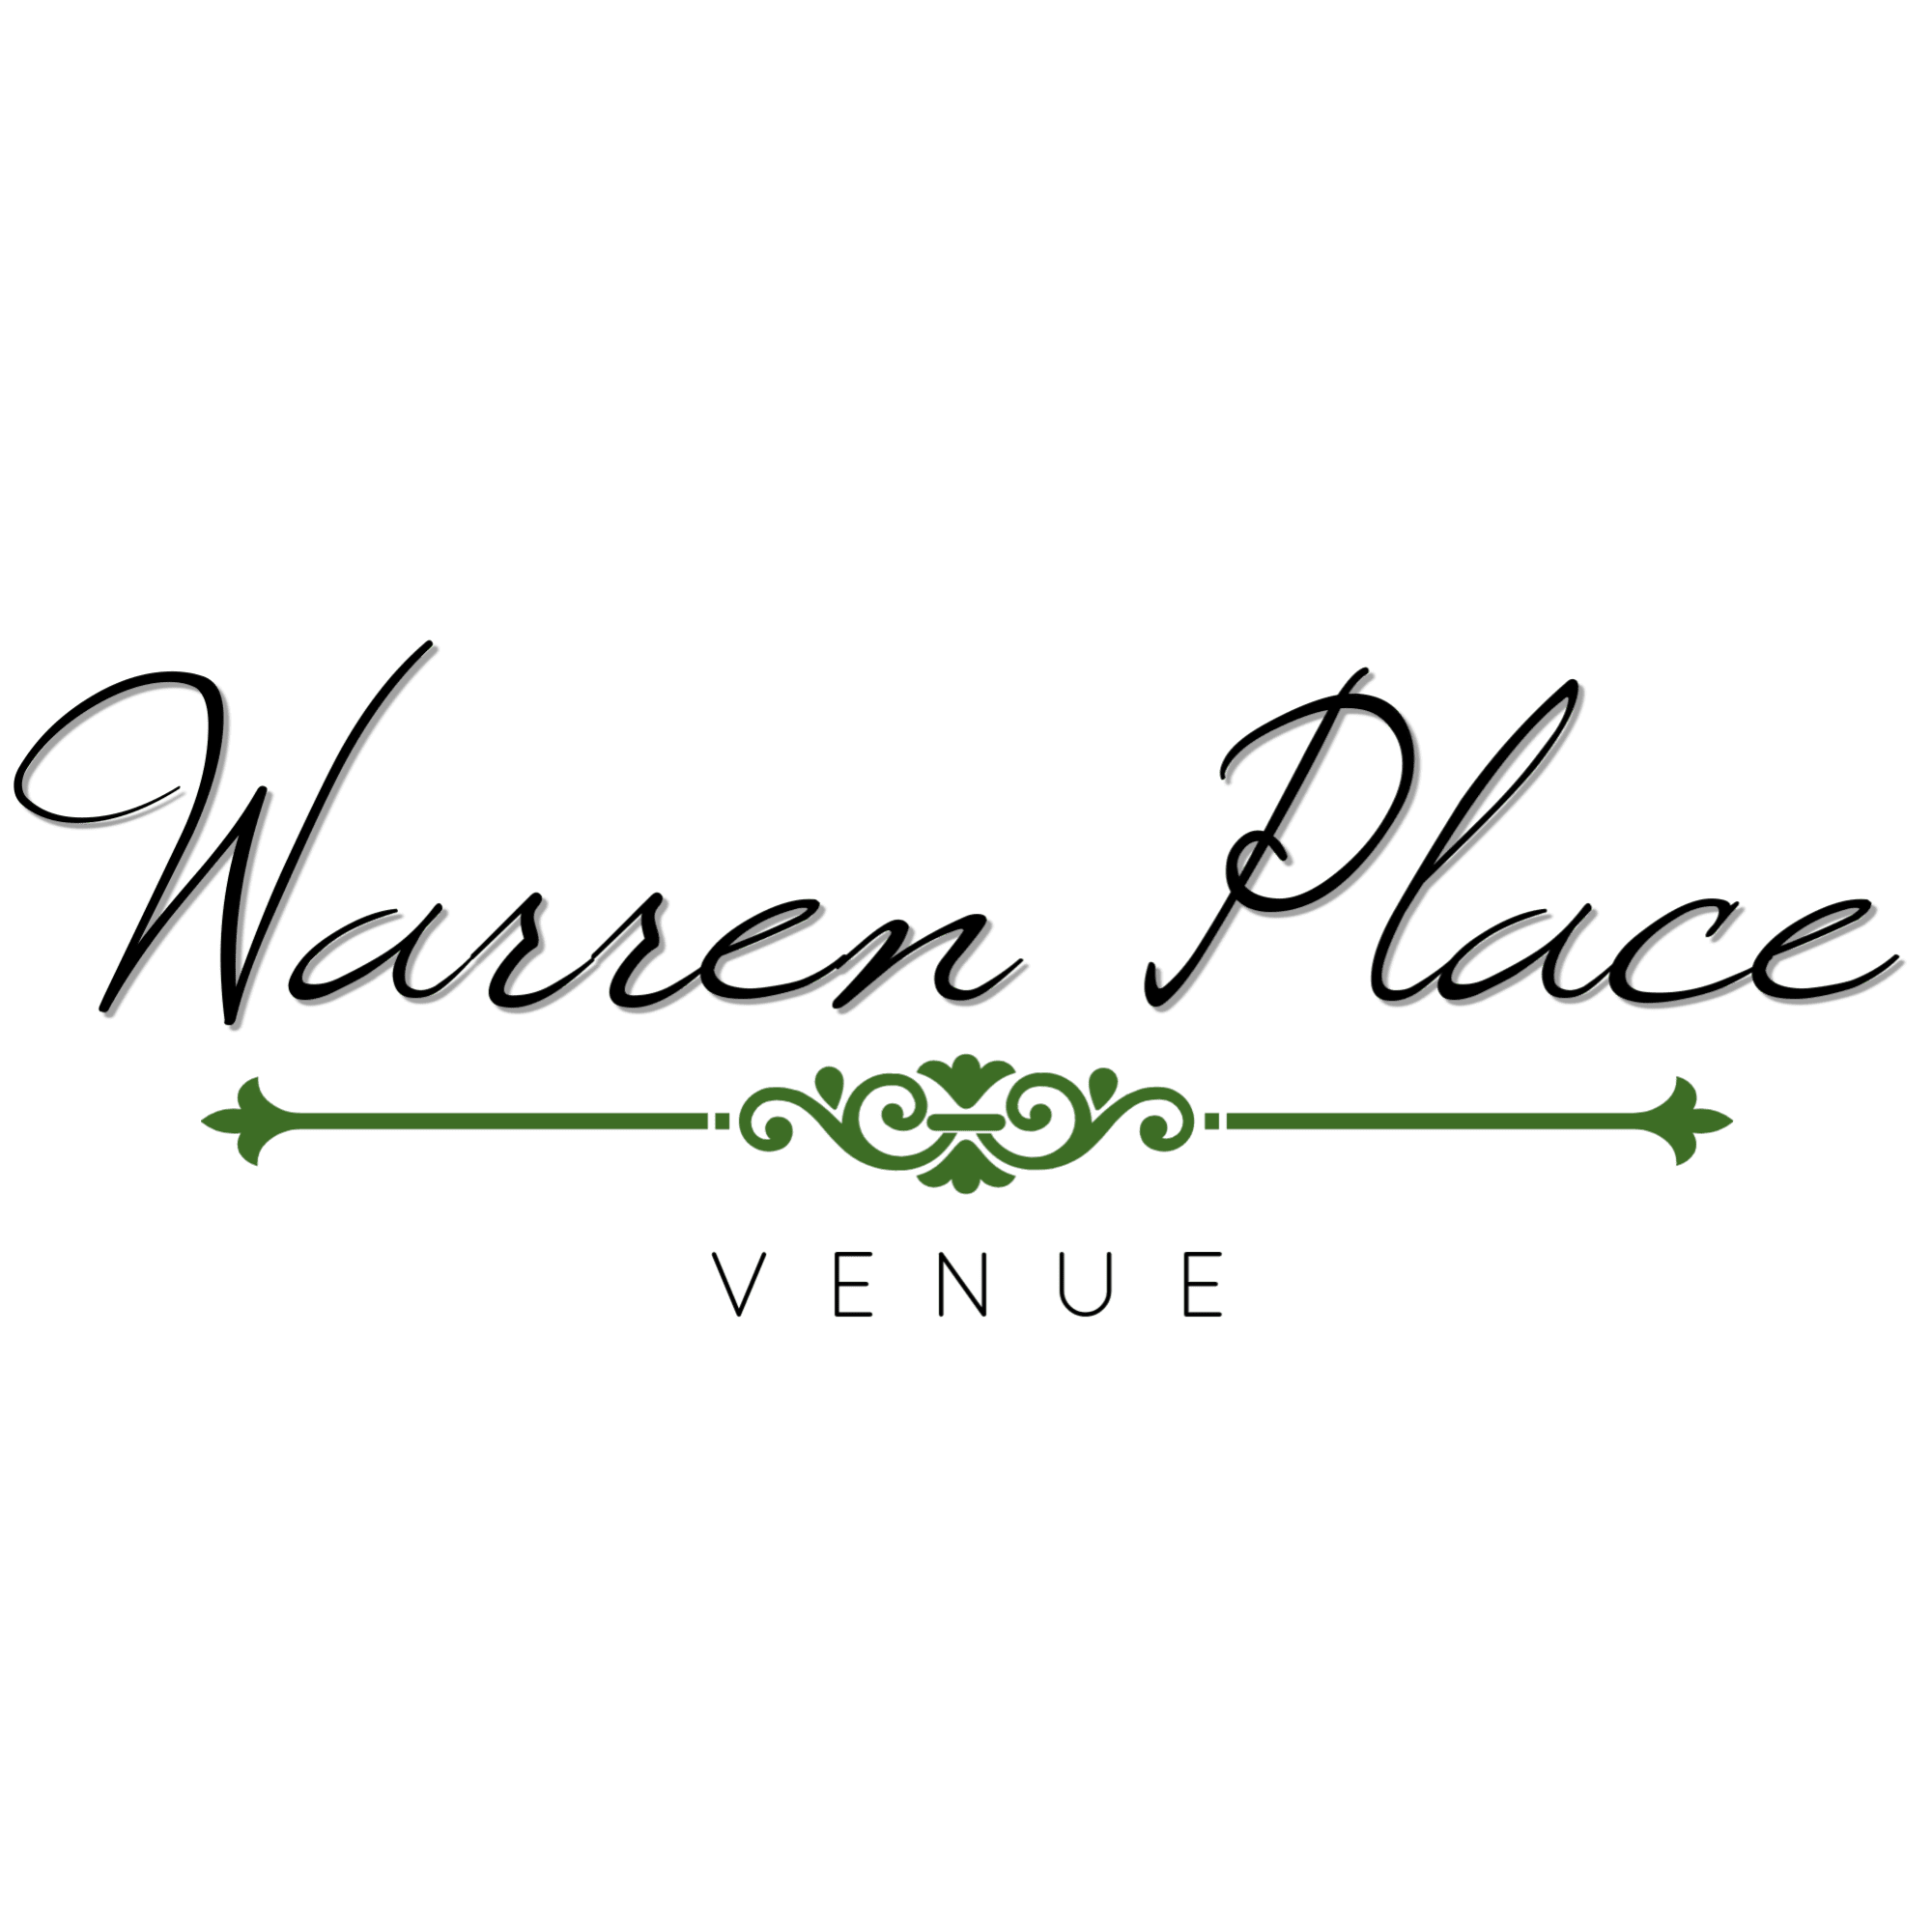 Warren Place Venue